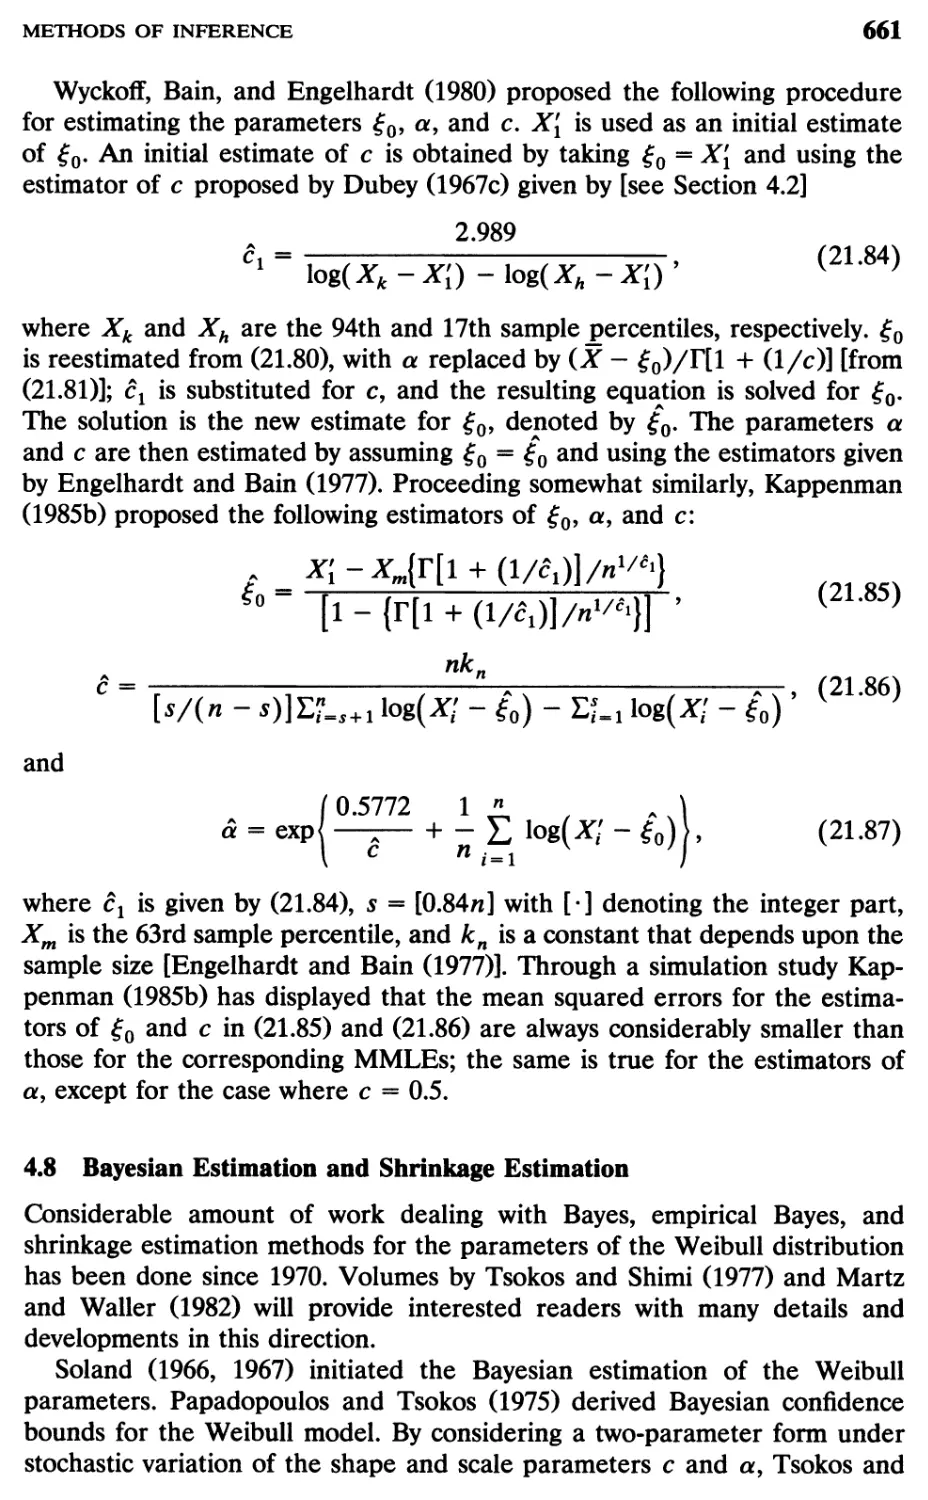 4.8 Bayesian Estimation and Shrinkage Estimation, 661